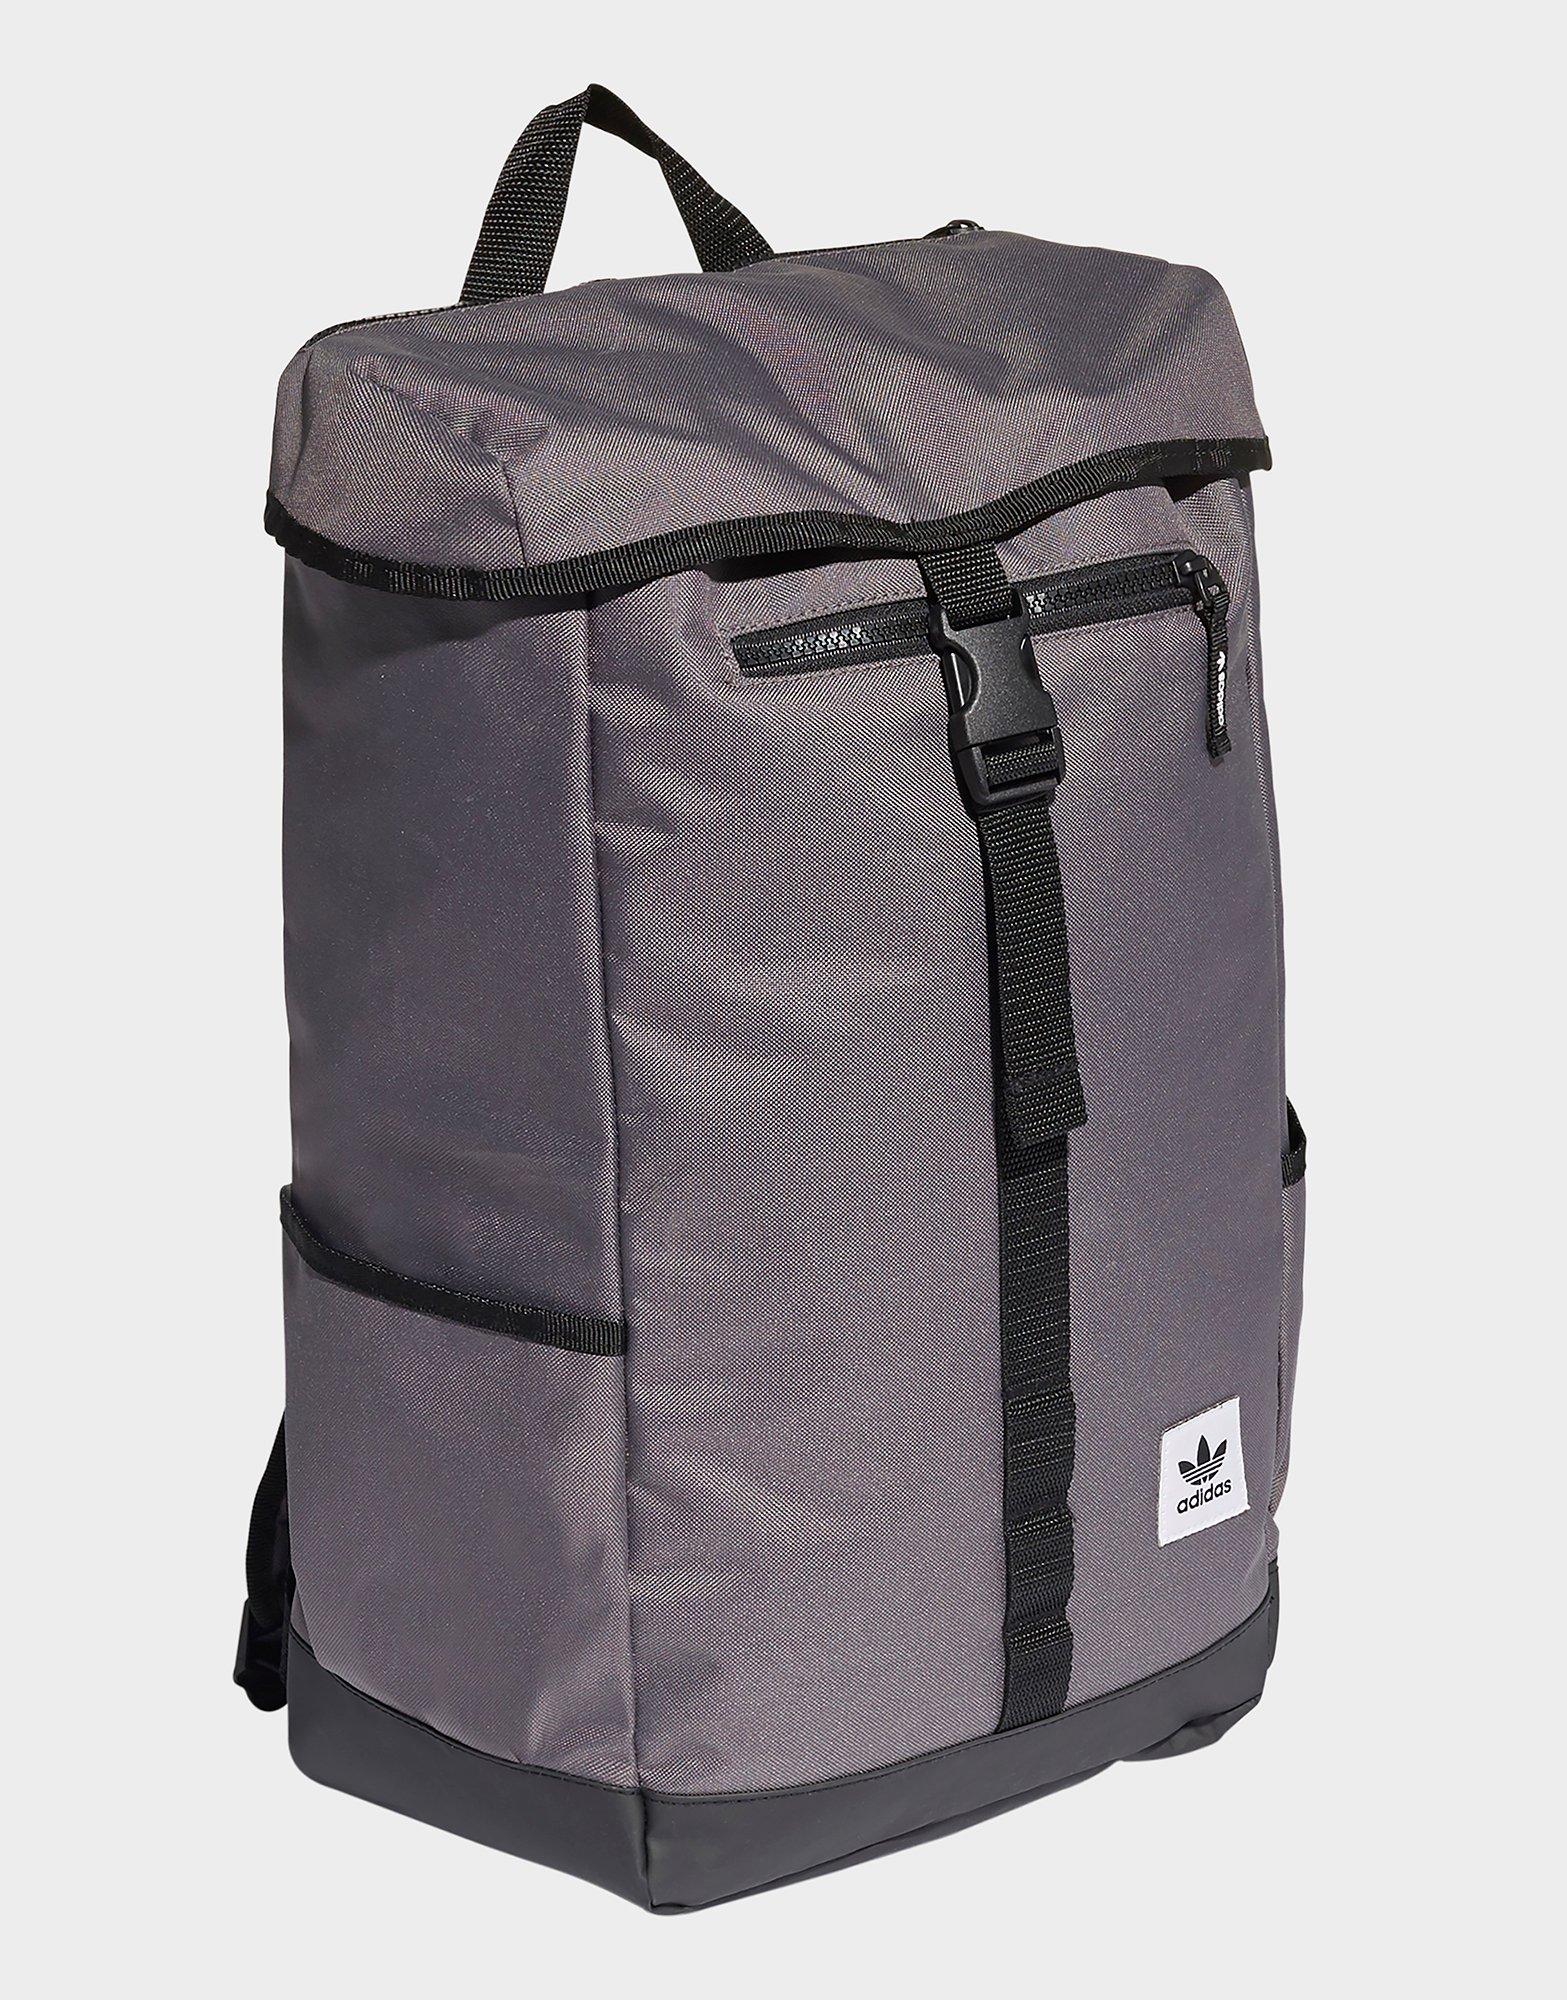 adidas toploader backpack